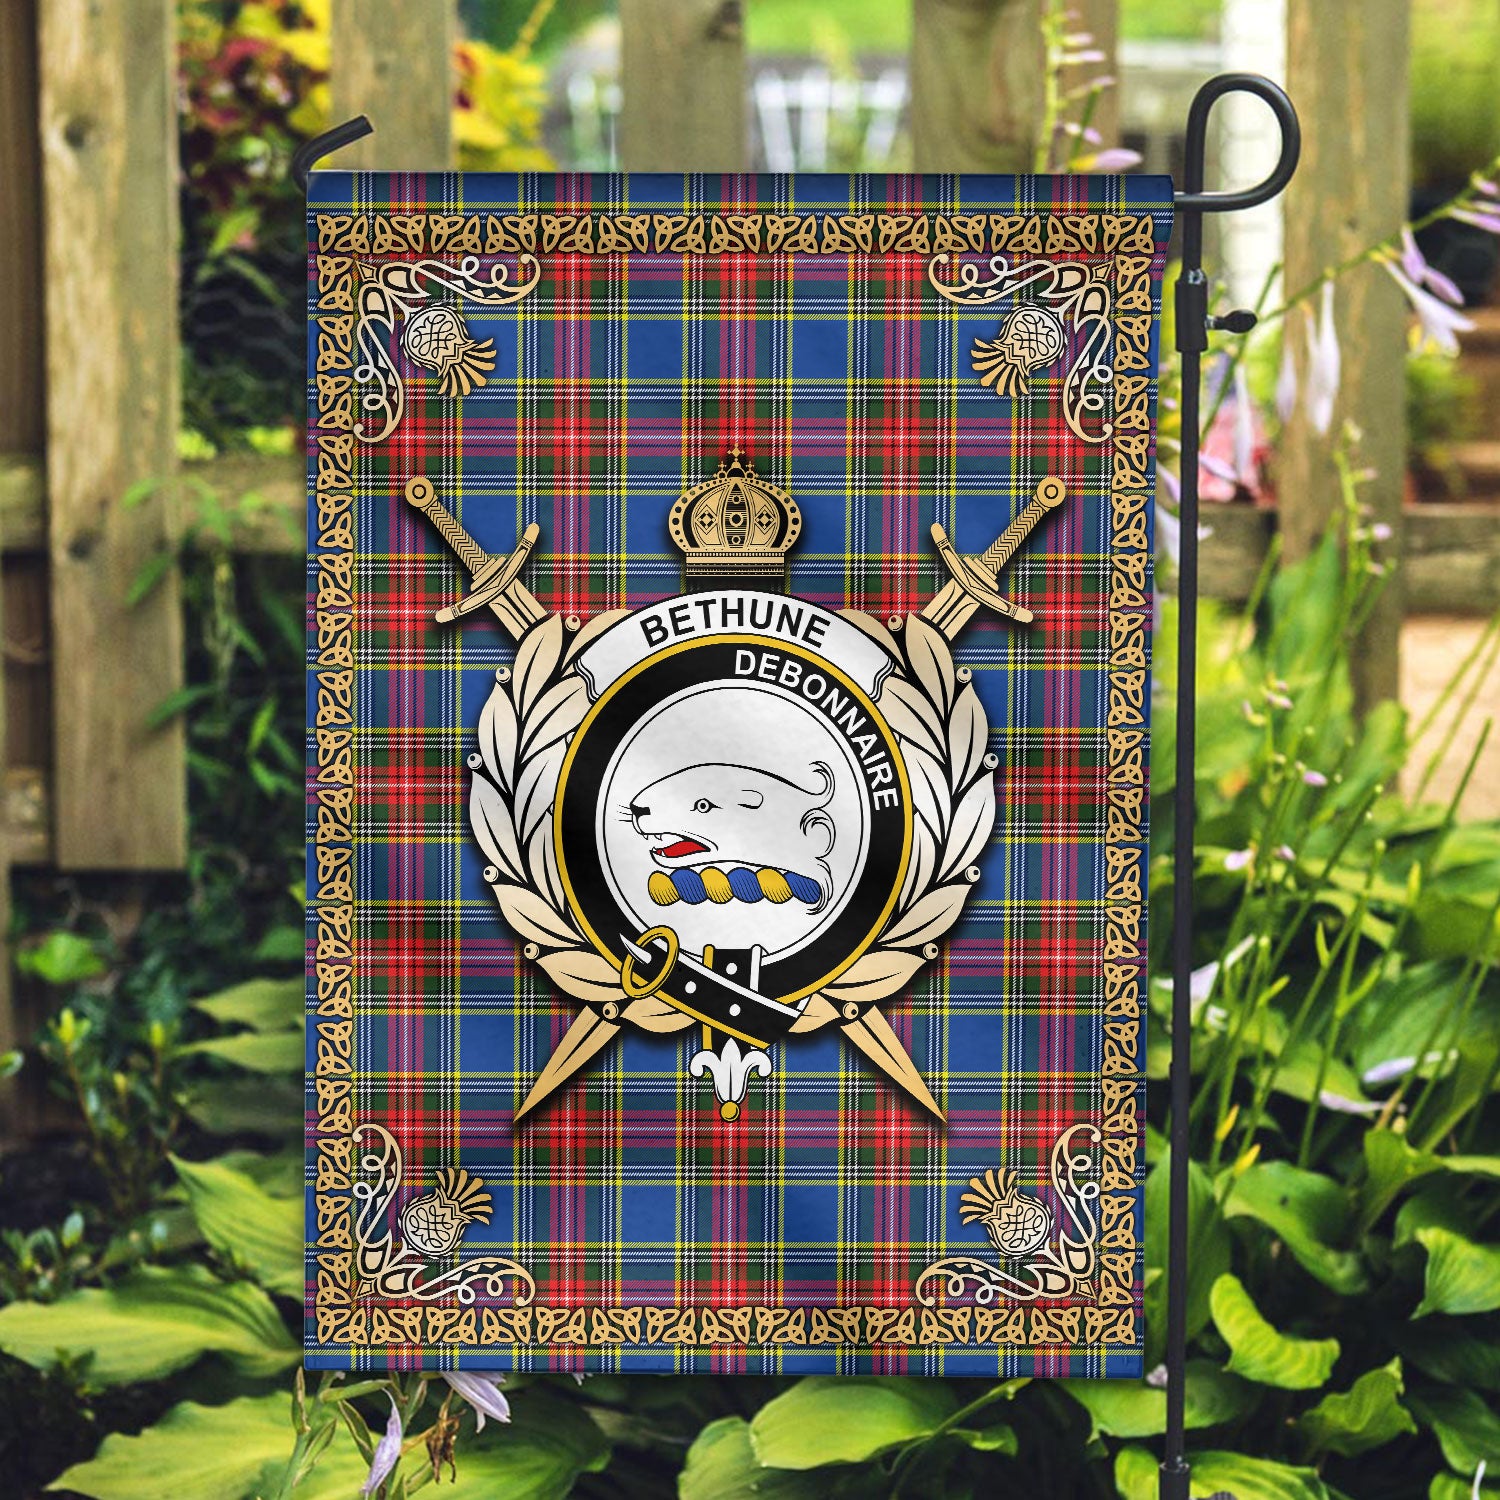 Bethune Modern Tartan Crest Garden Flag - Celtic Thistle Style